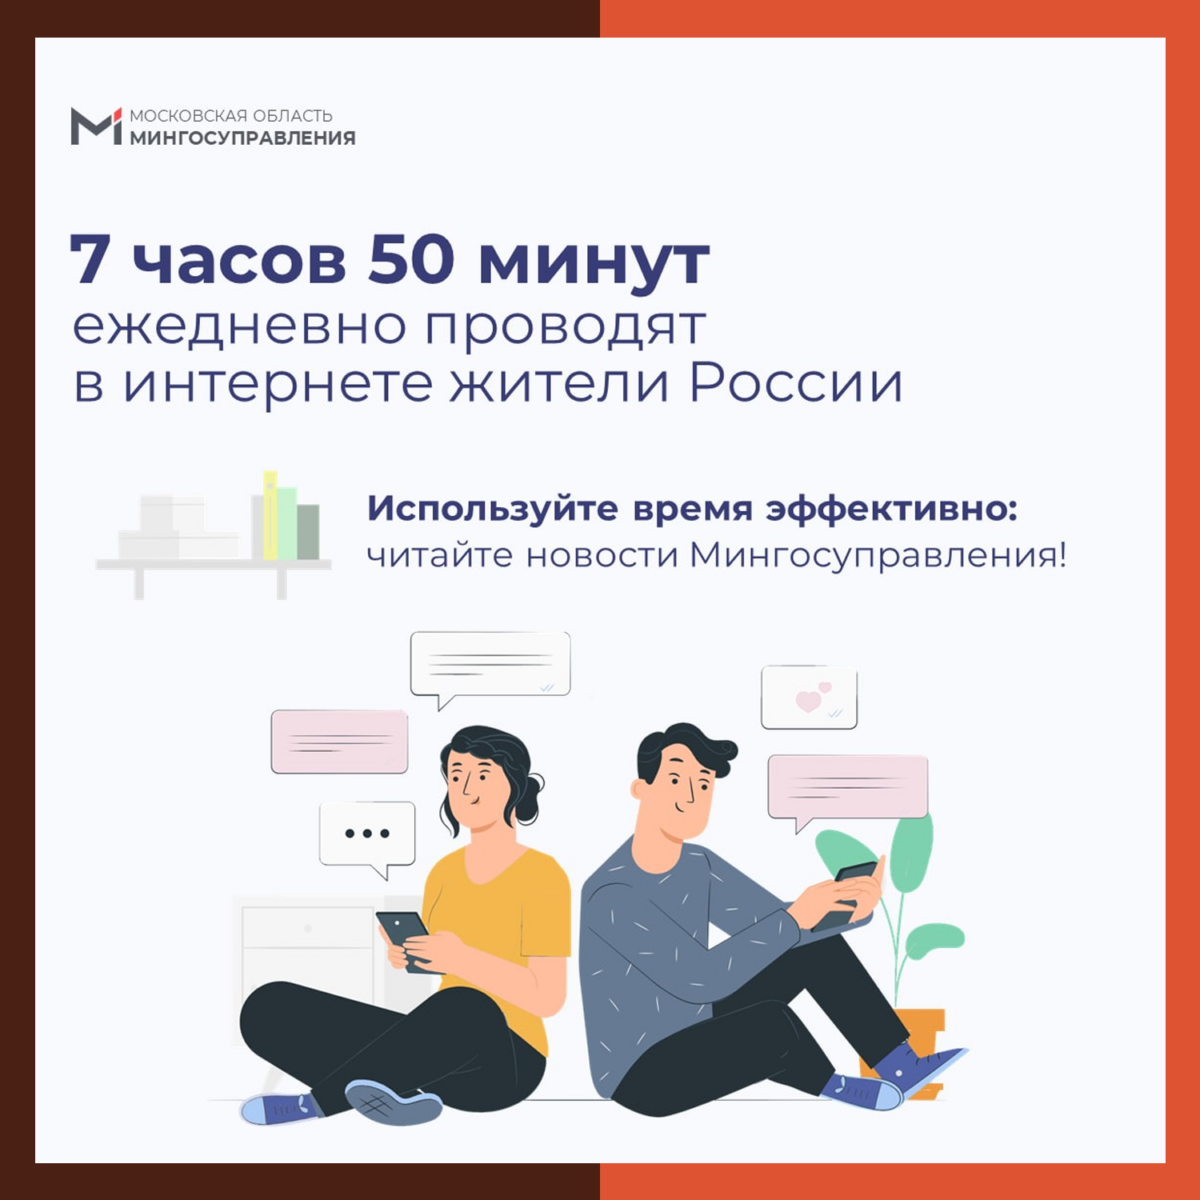 7 часов 50 минут – именно столько жители России ежедневно проводят в интернете ?